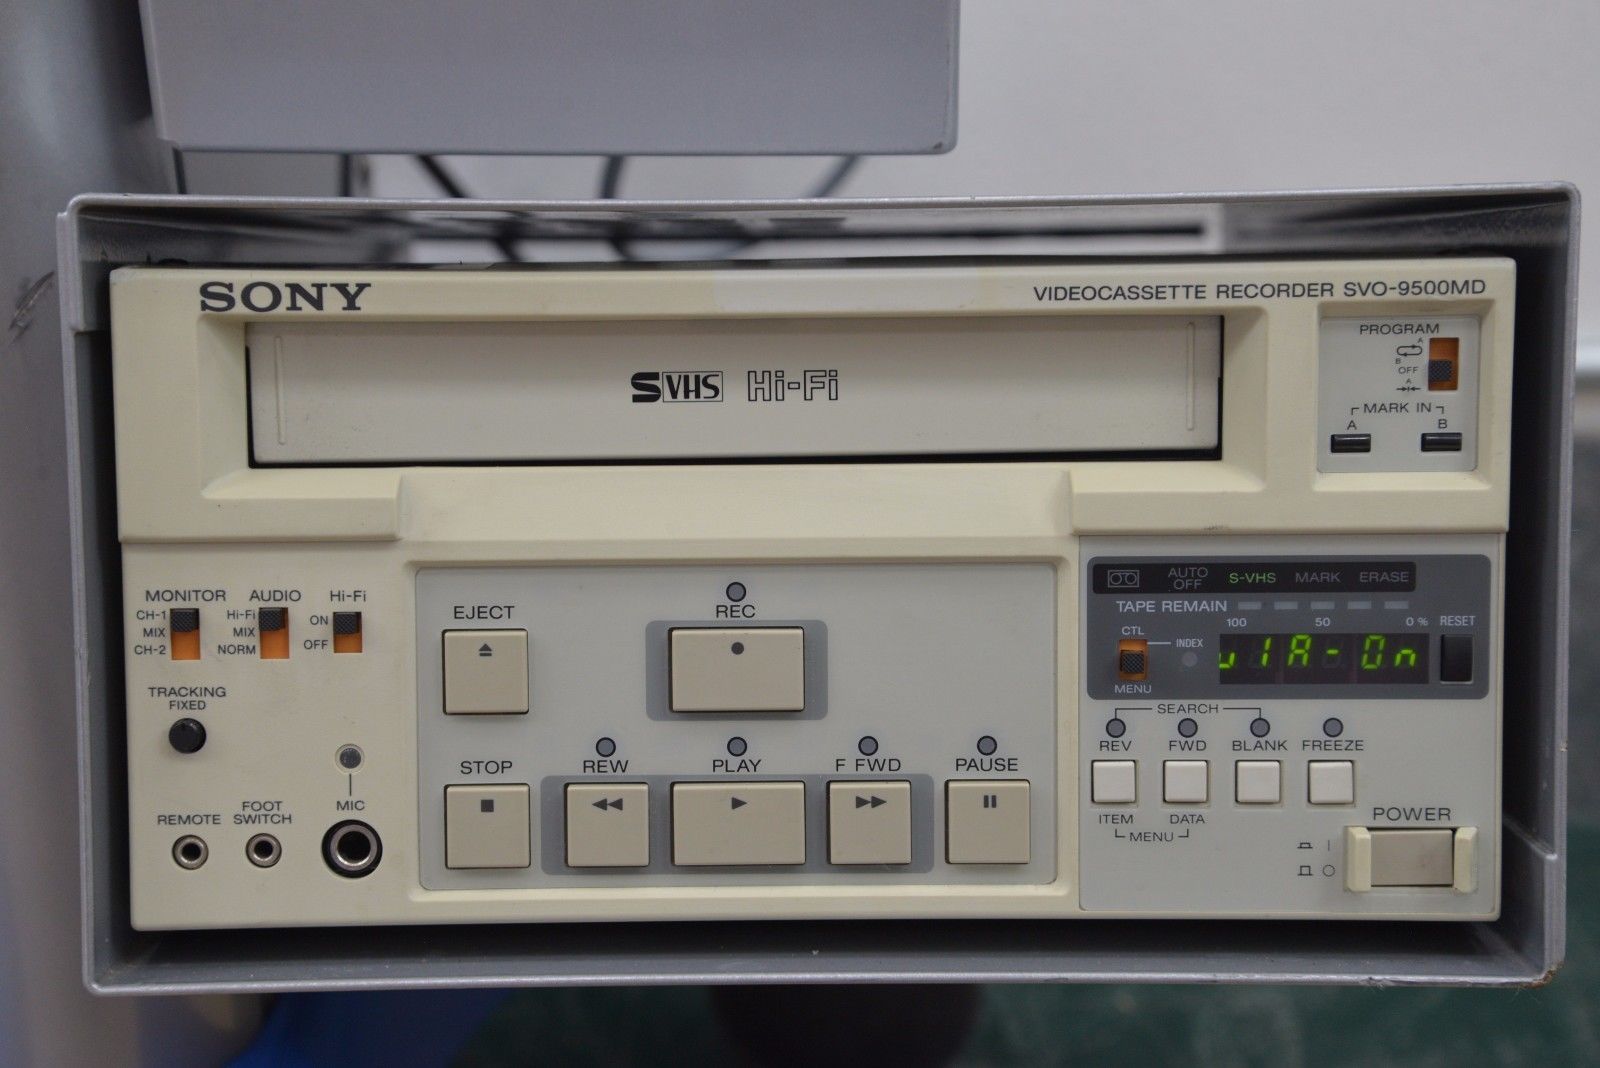 SonoSite SonoHeart Elite Ultrasound C15e CW MCX Probe & Cart VCR Printer (13702) DIAGNOSTIC ULTRASOUND MACHINES FOR SALE